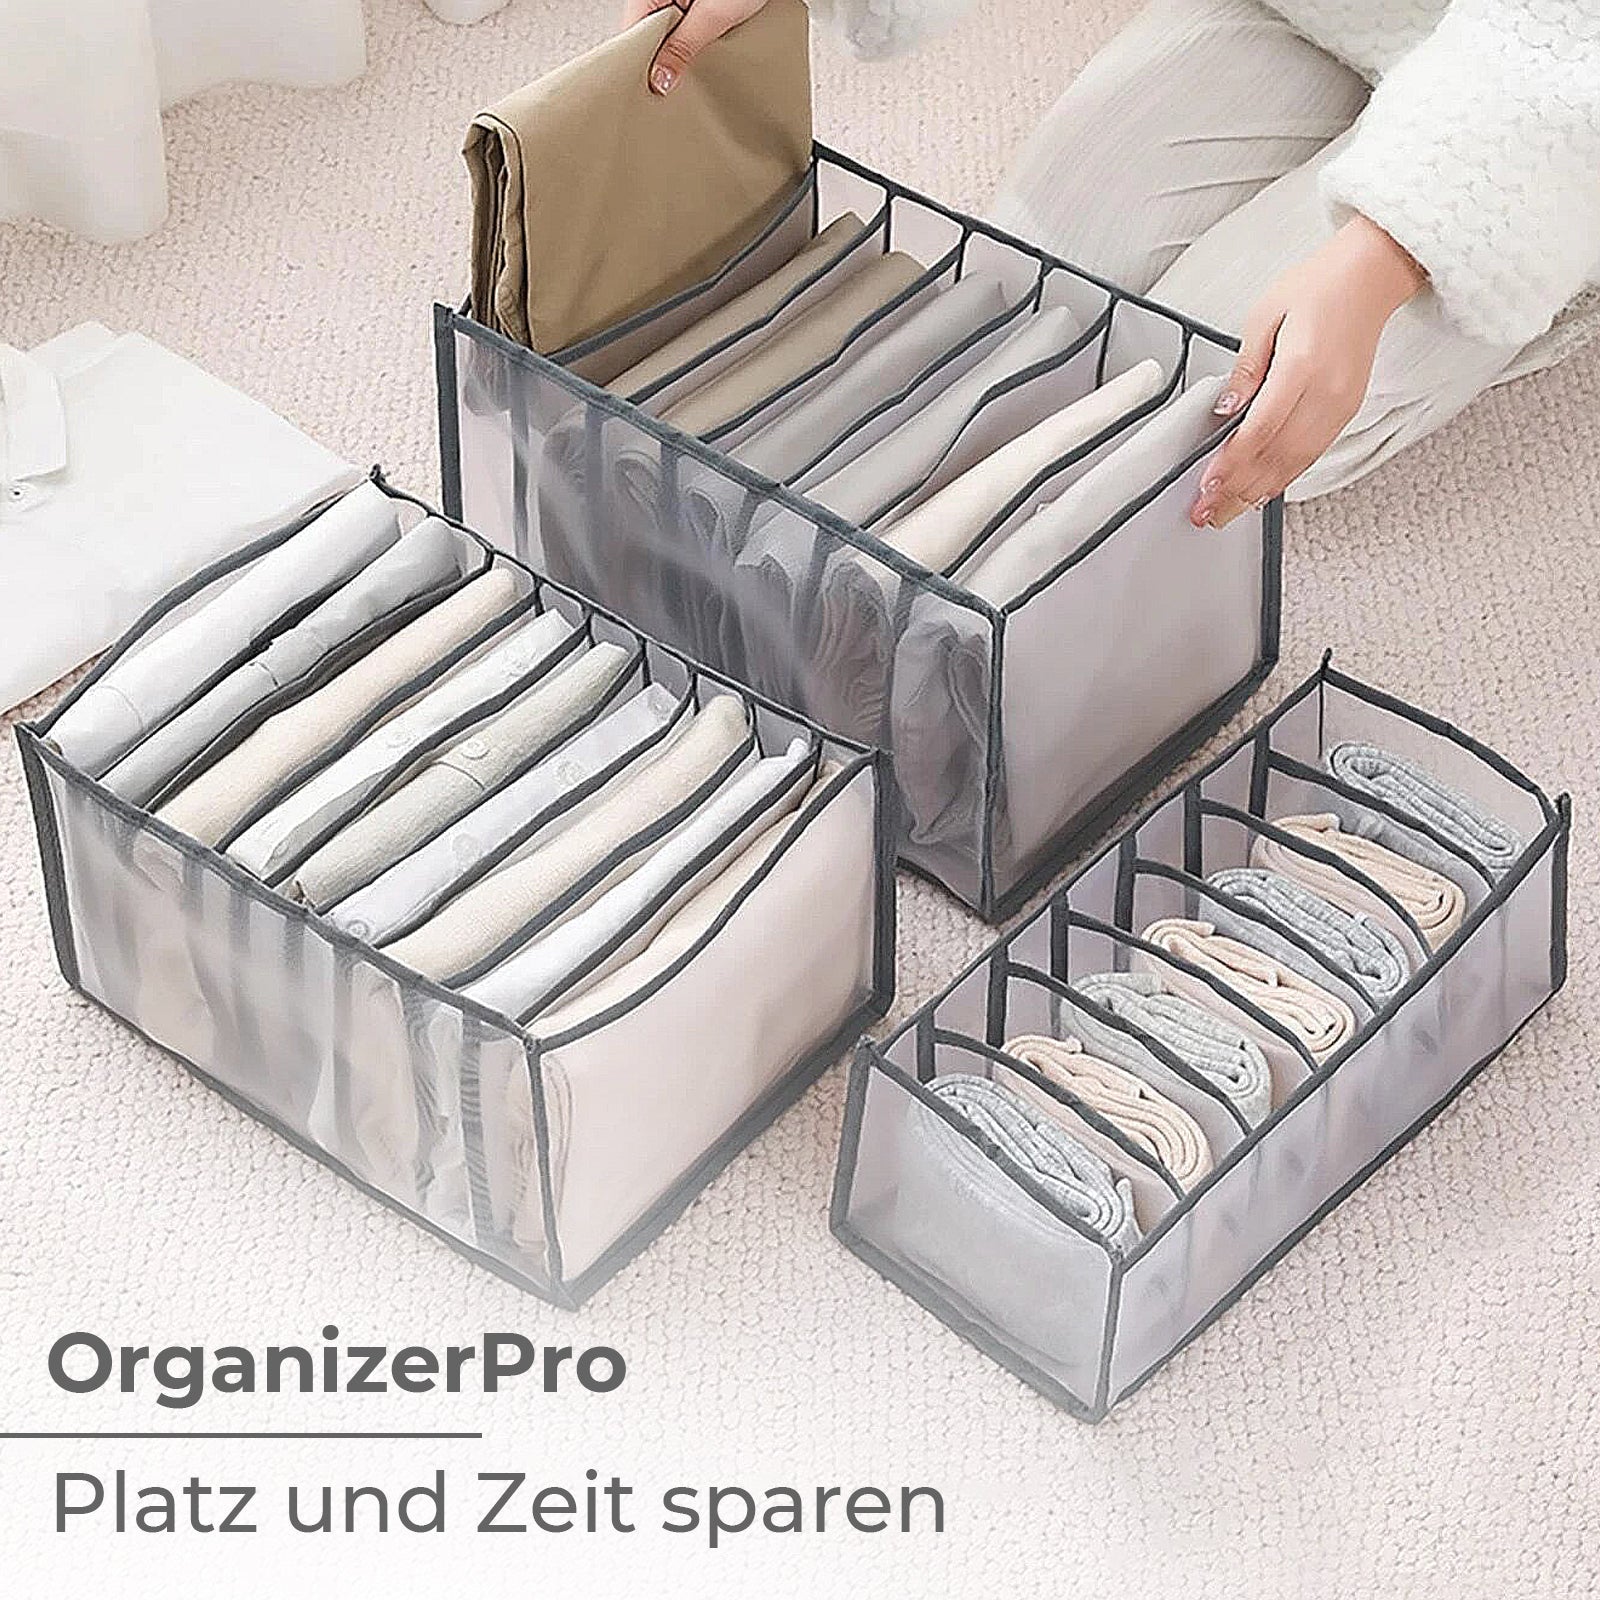 OrganizerPro™ | Platz und Zeit sparen【Letzter tag Rabatt】